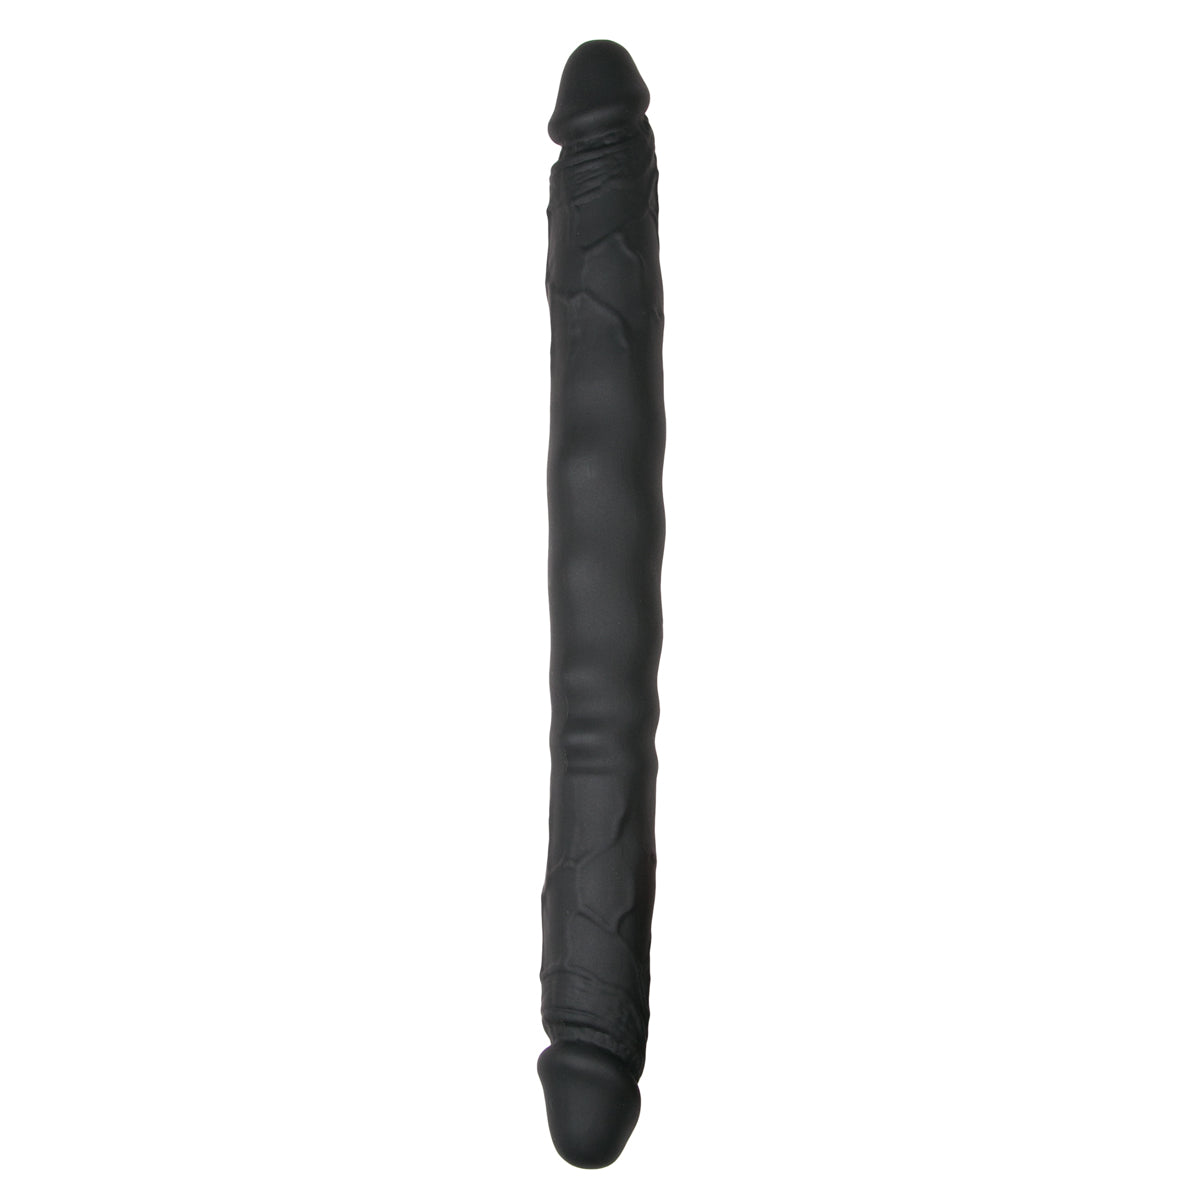 Zeer grote realistische zwarte dubbele dildo van 40 cm lang. De dildo is van het merk EasyToys en te koop bij Flavourez.